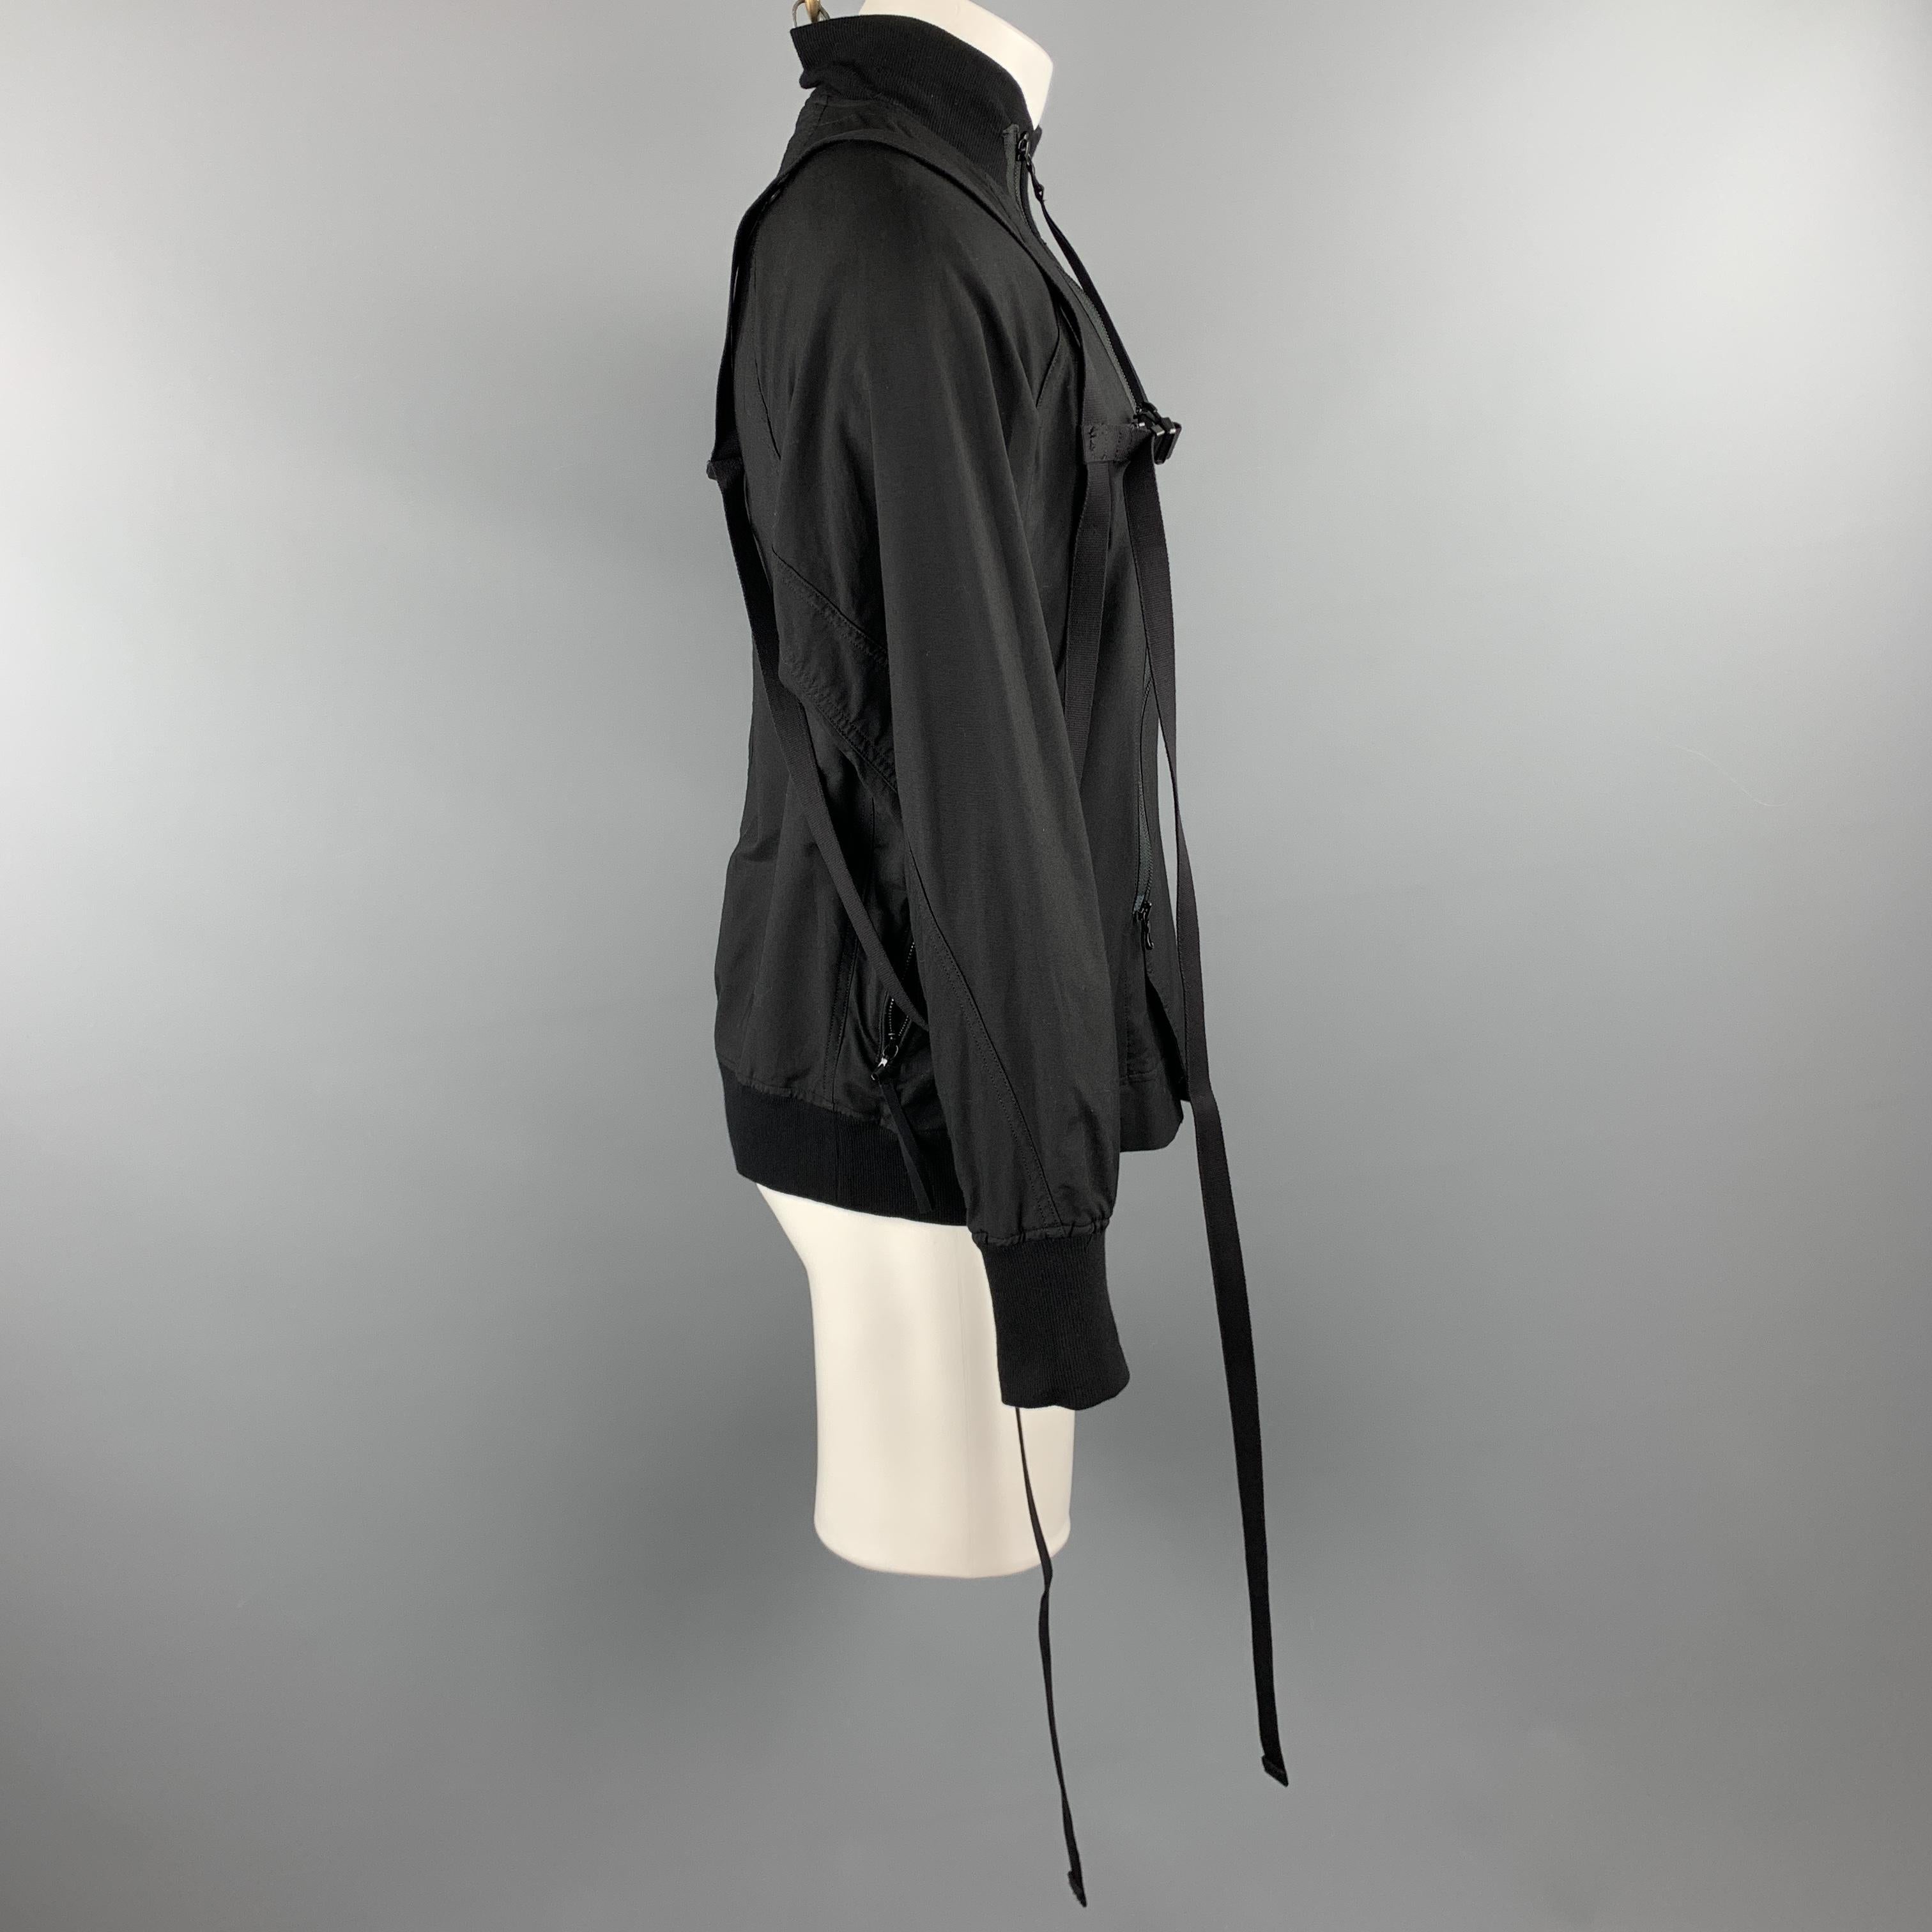 Men's JULIUS_7 S/S 18 Size M Black Cotton / Nylon Zip Up A81 Harness Jacket